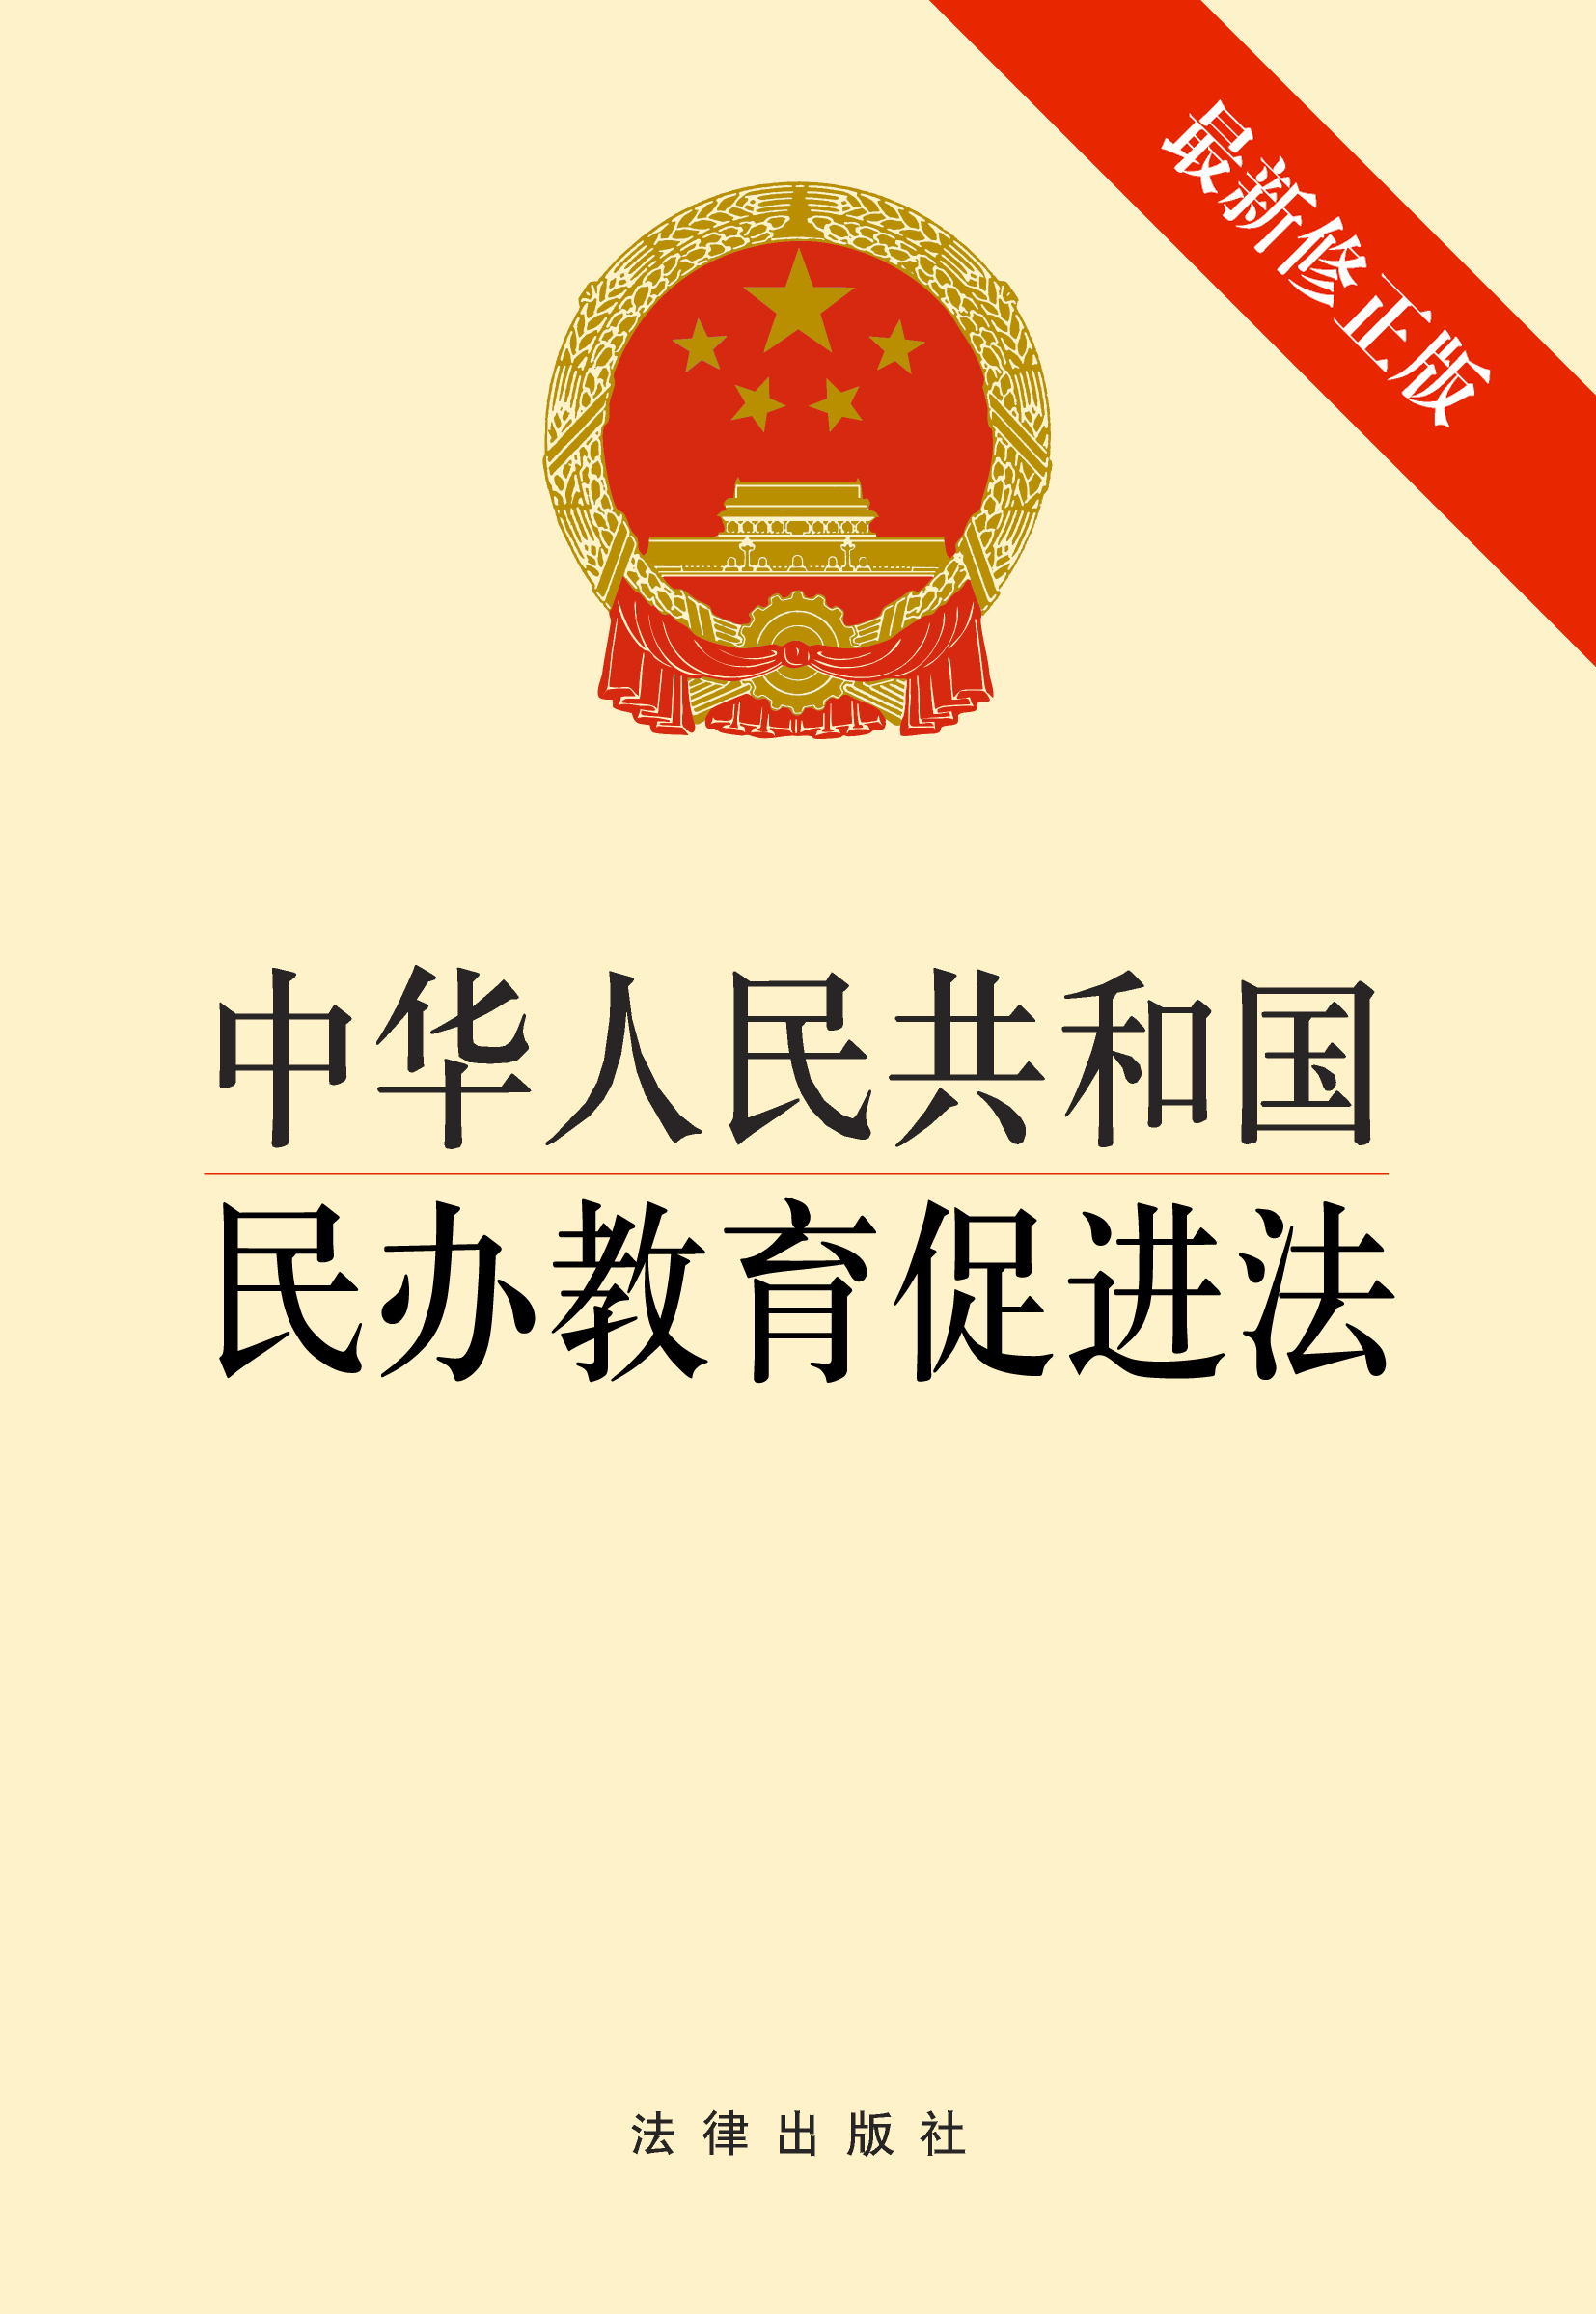 中华人民共和国民办教育促进法-最新修正版 \/全